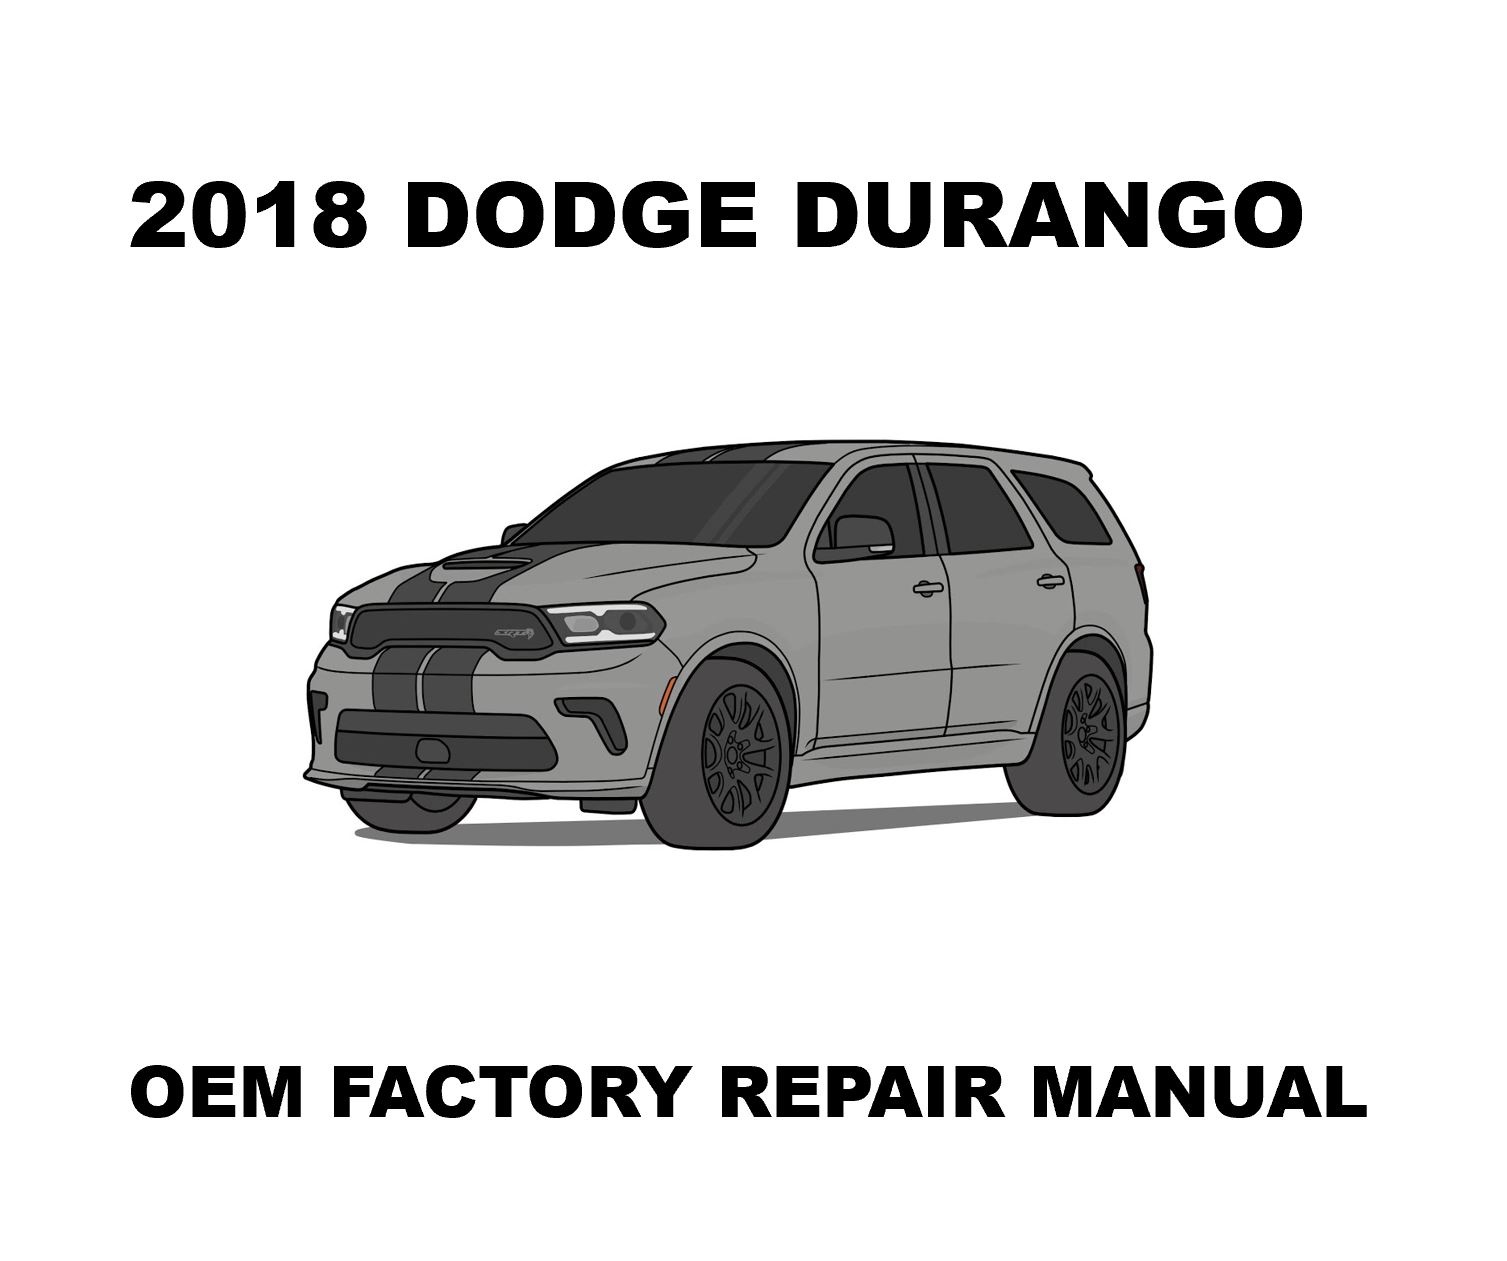 2018_dodge_durango_repair_manual_1507